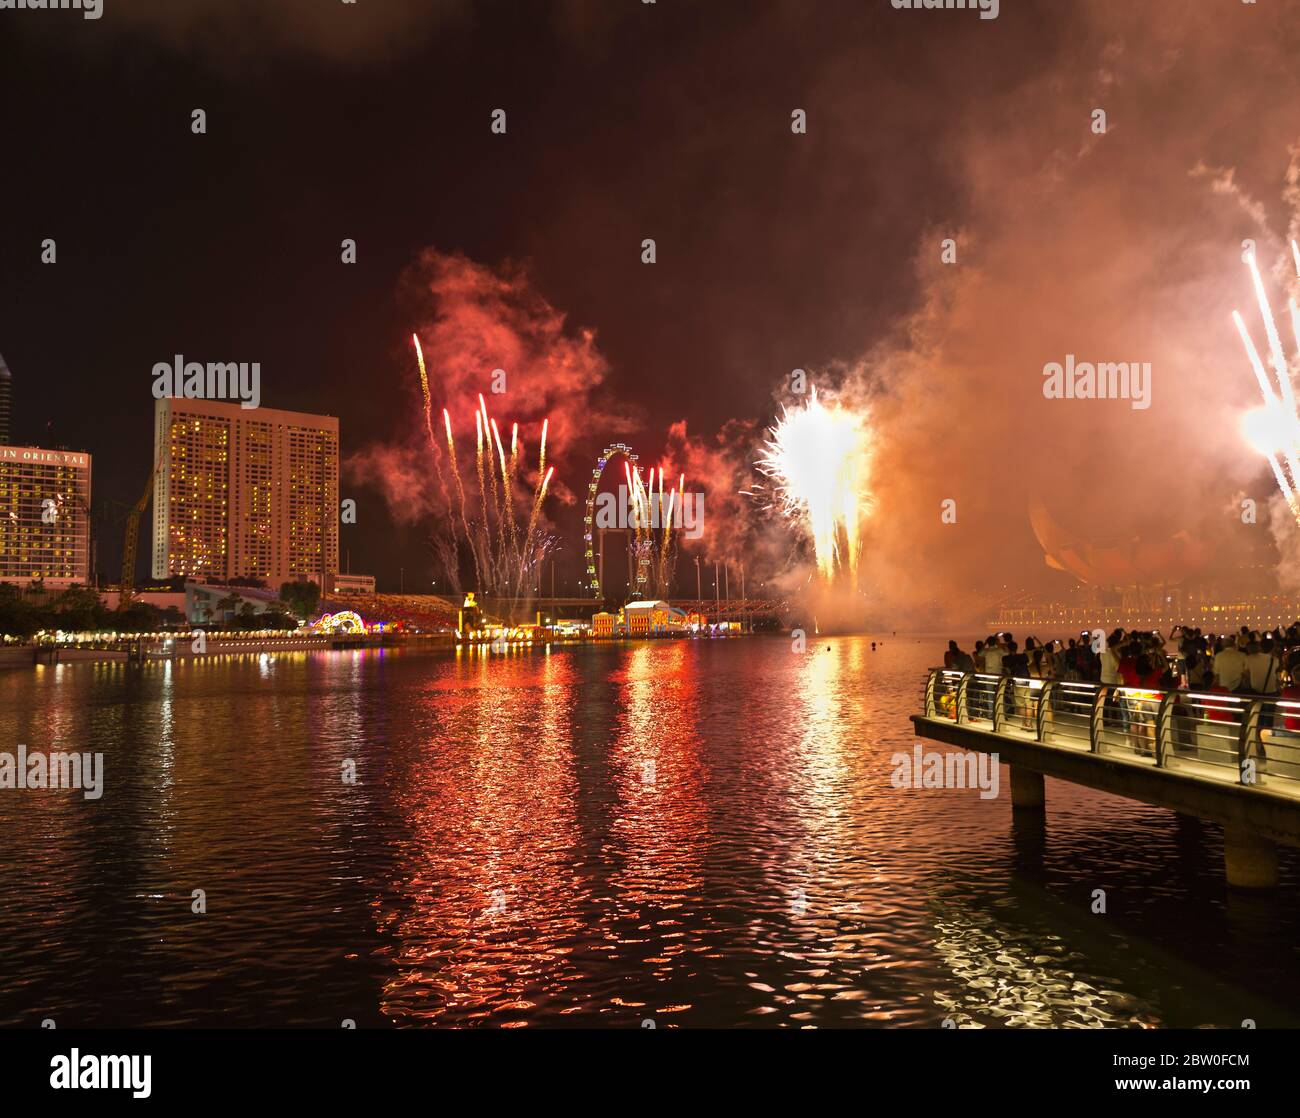 dh Chinois nouvel an Fireworks MARINA BAY SINGAPOUR les gens qui regardent des feux d'artifice Banque D'Images